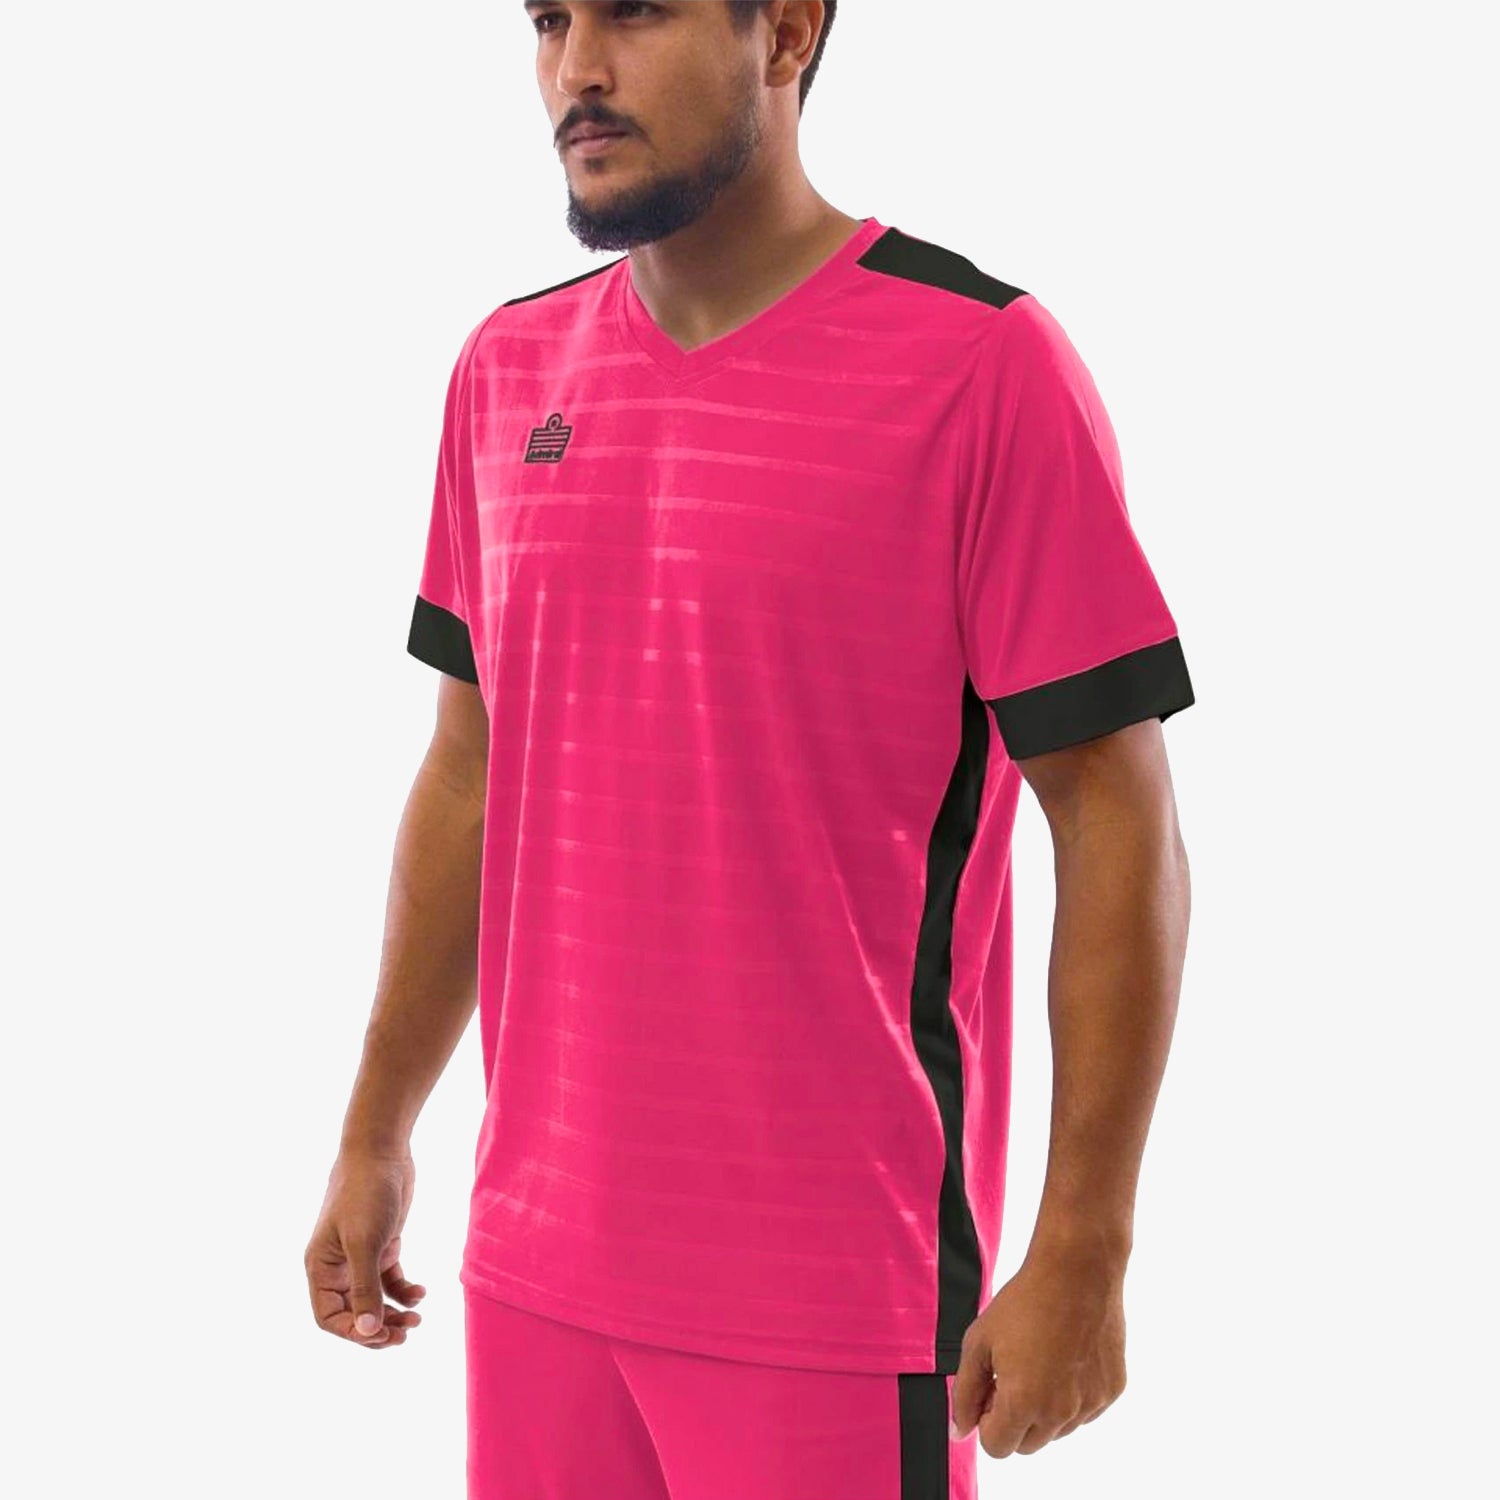 Derby Jersey Pink/Black